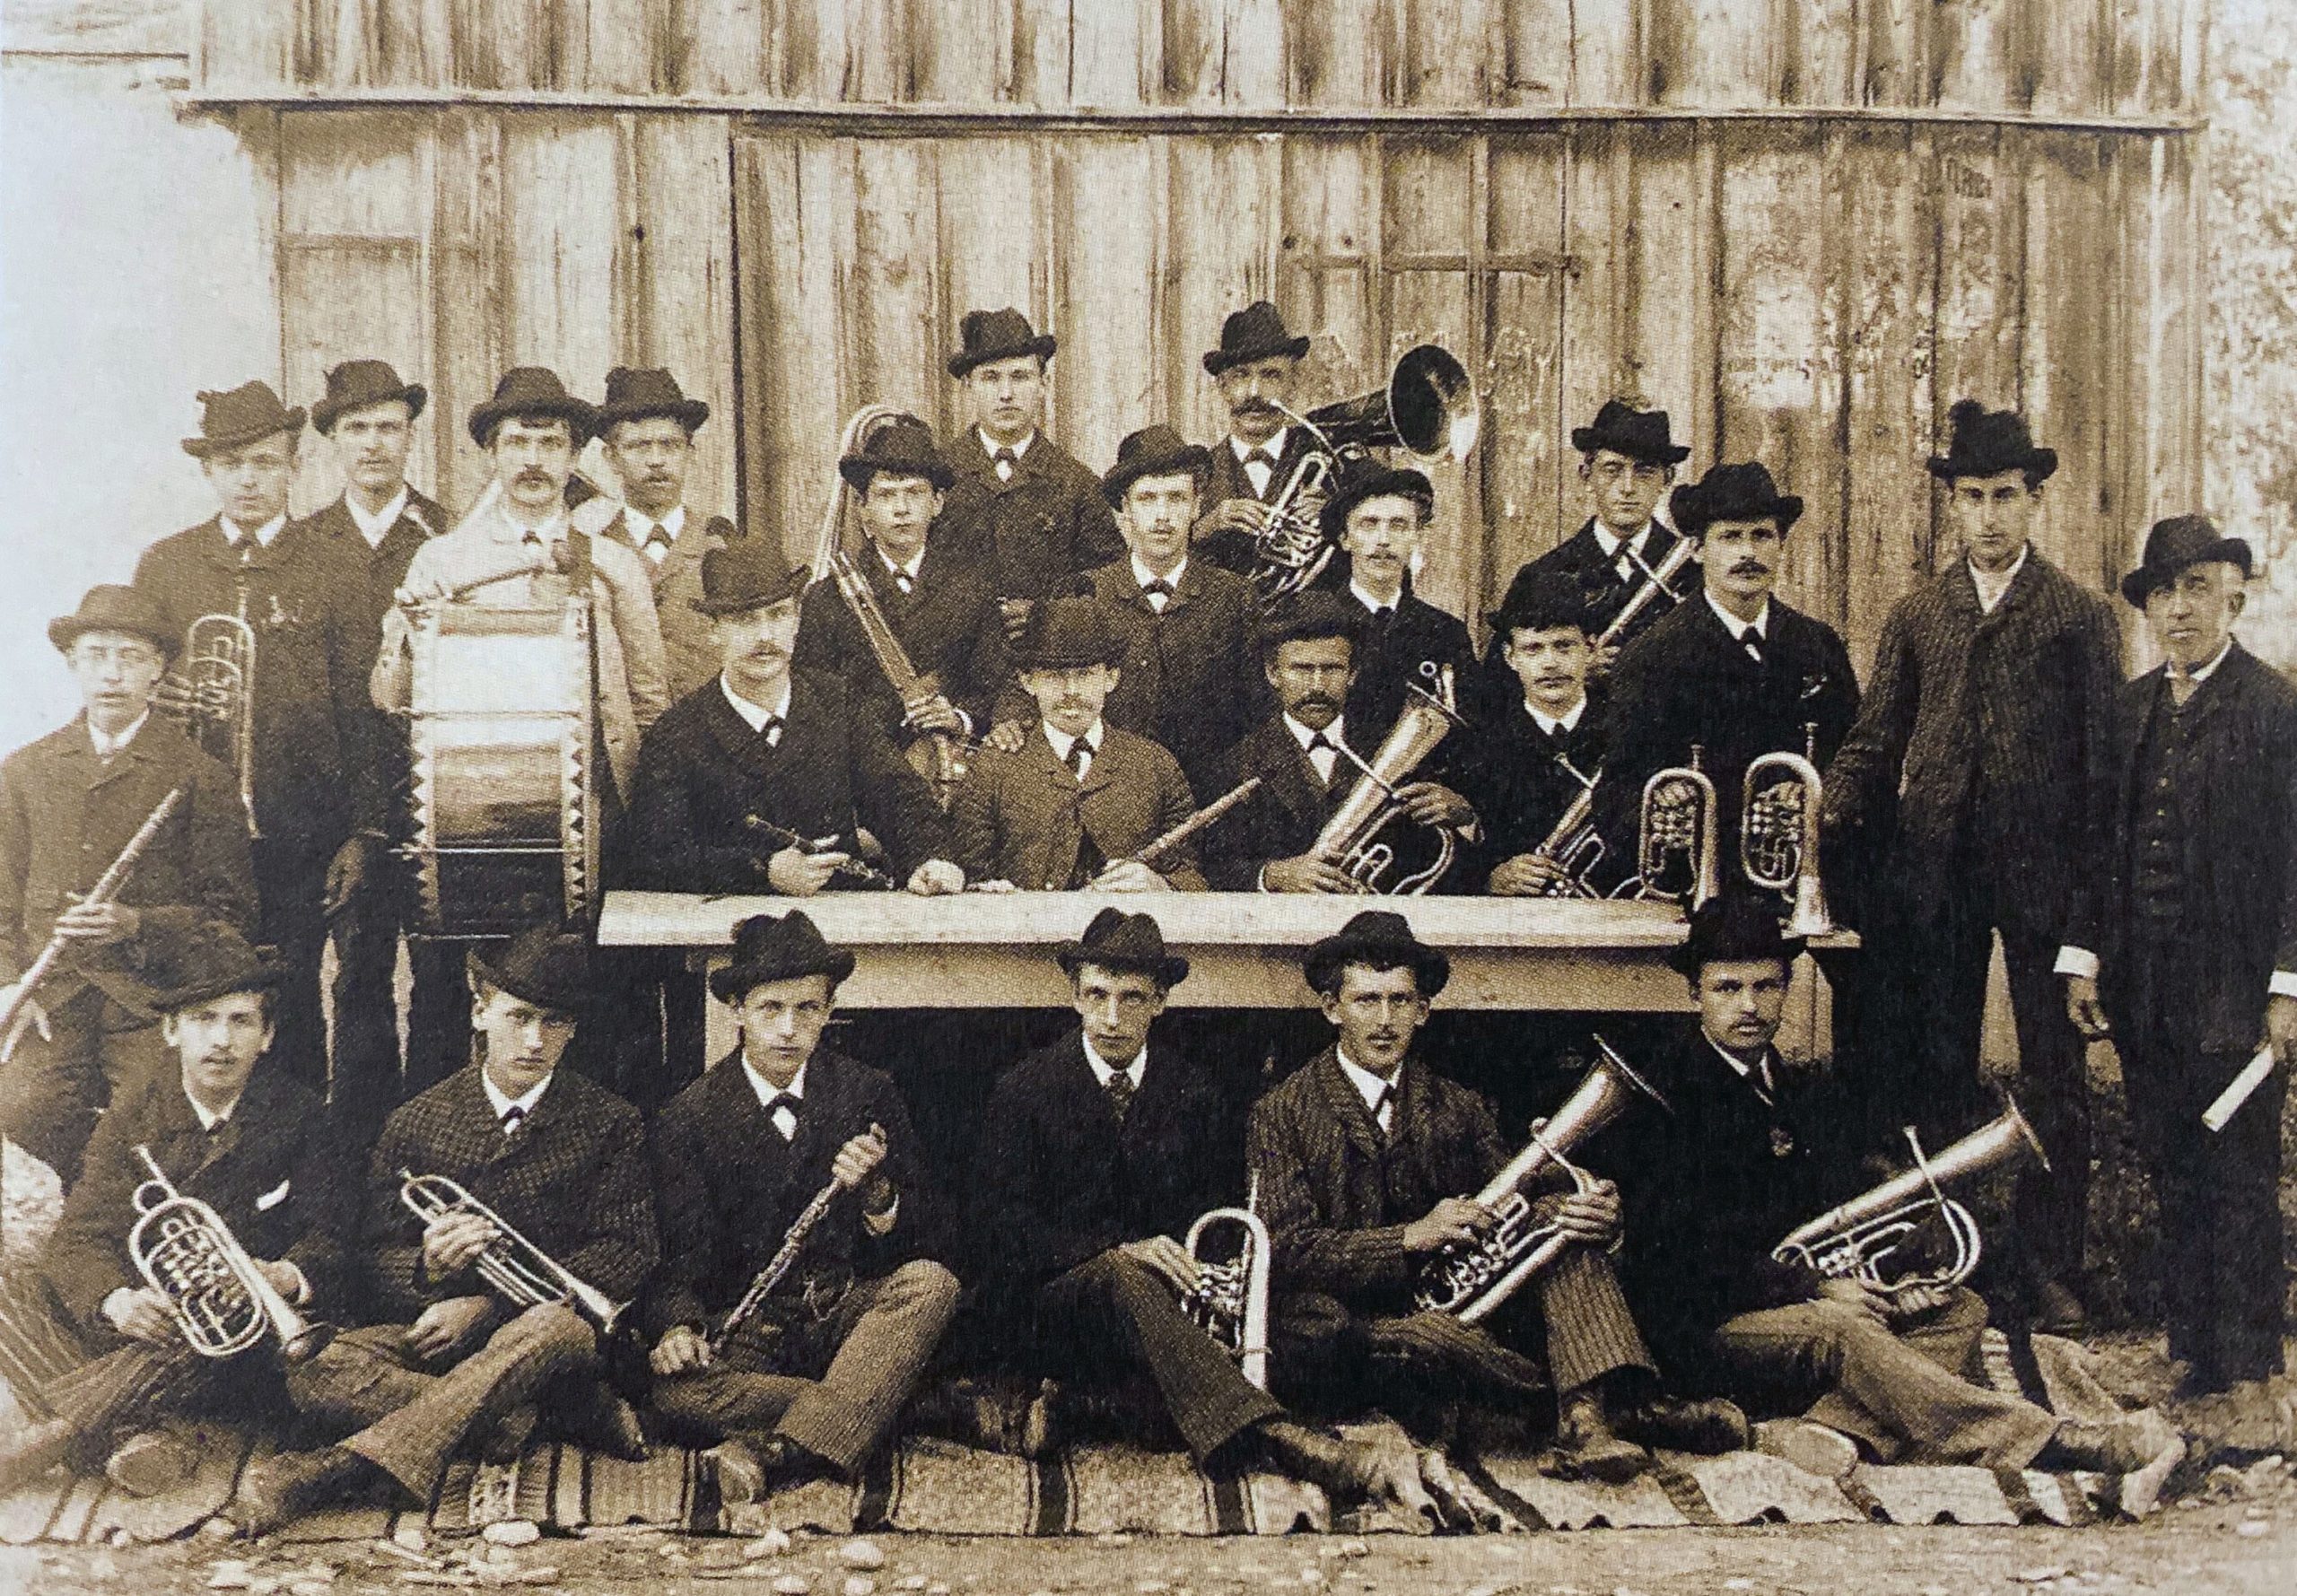 Musikgesellschaft Altach im Jahr 1892: Drei Jahre nach der Gründung dienen vorerst gleichartige Hüte als „Uniform“